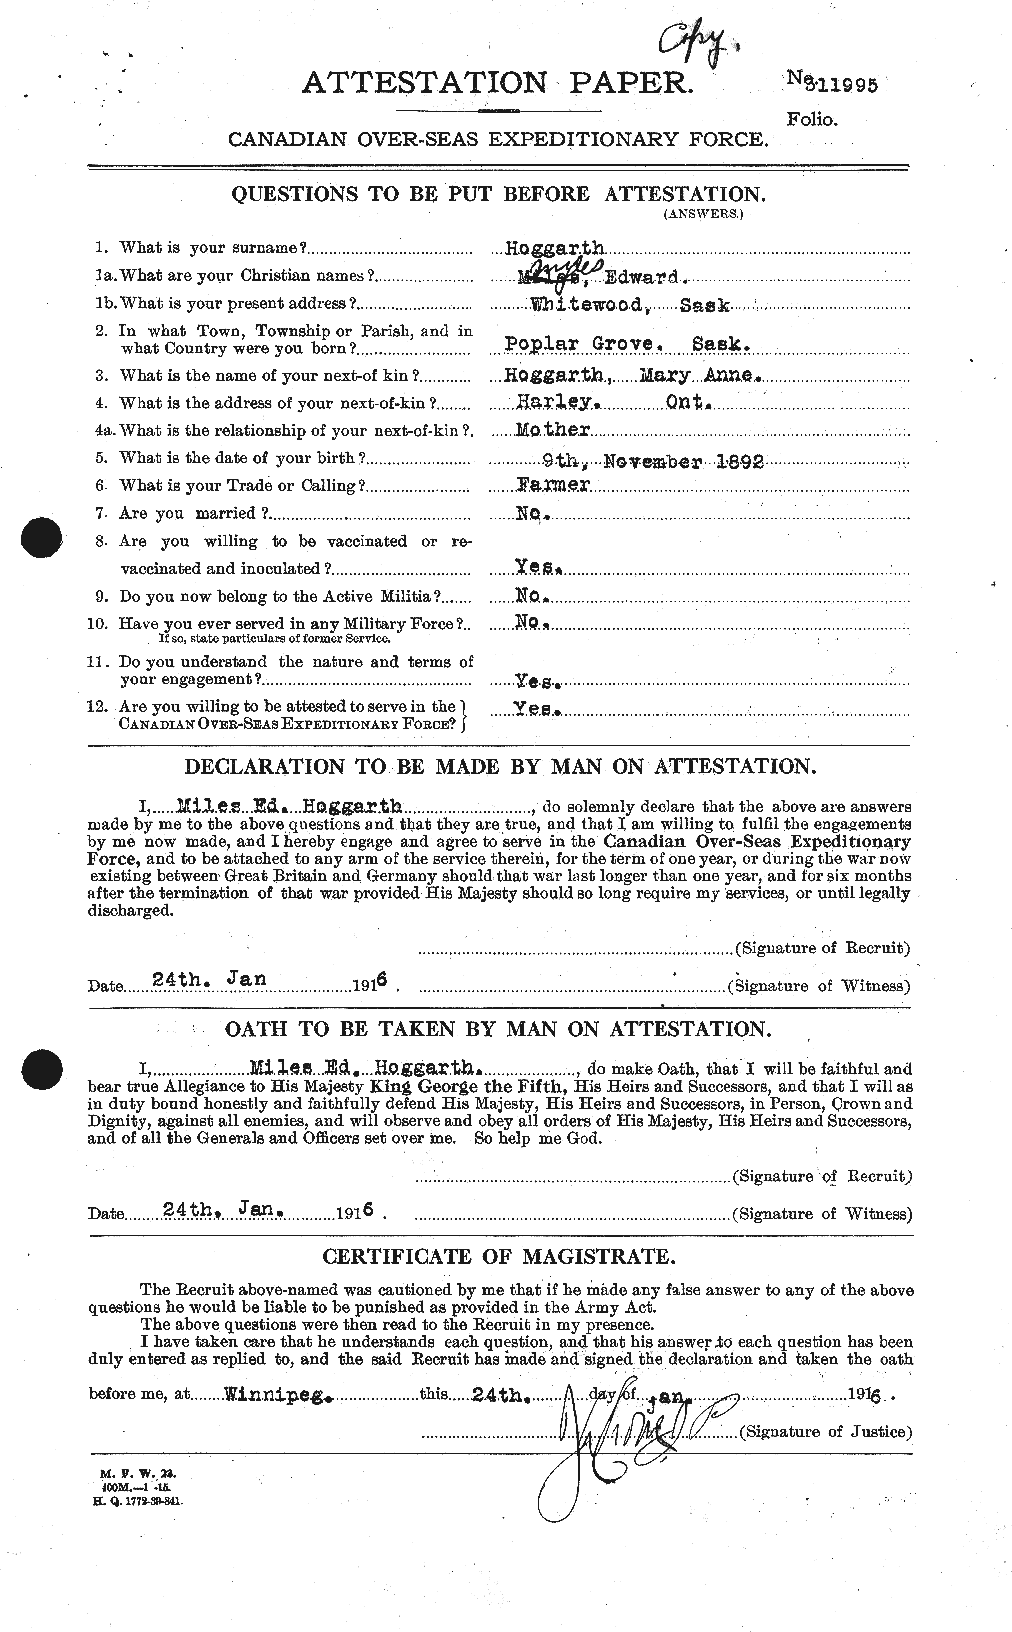 Dossiers du Personnel de la Première Guerre mondiale - CEC 396492a